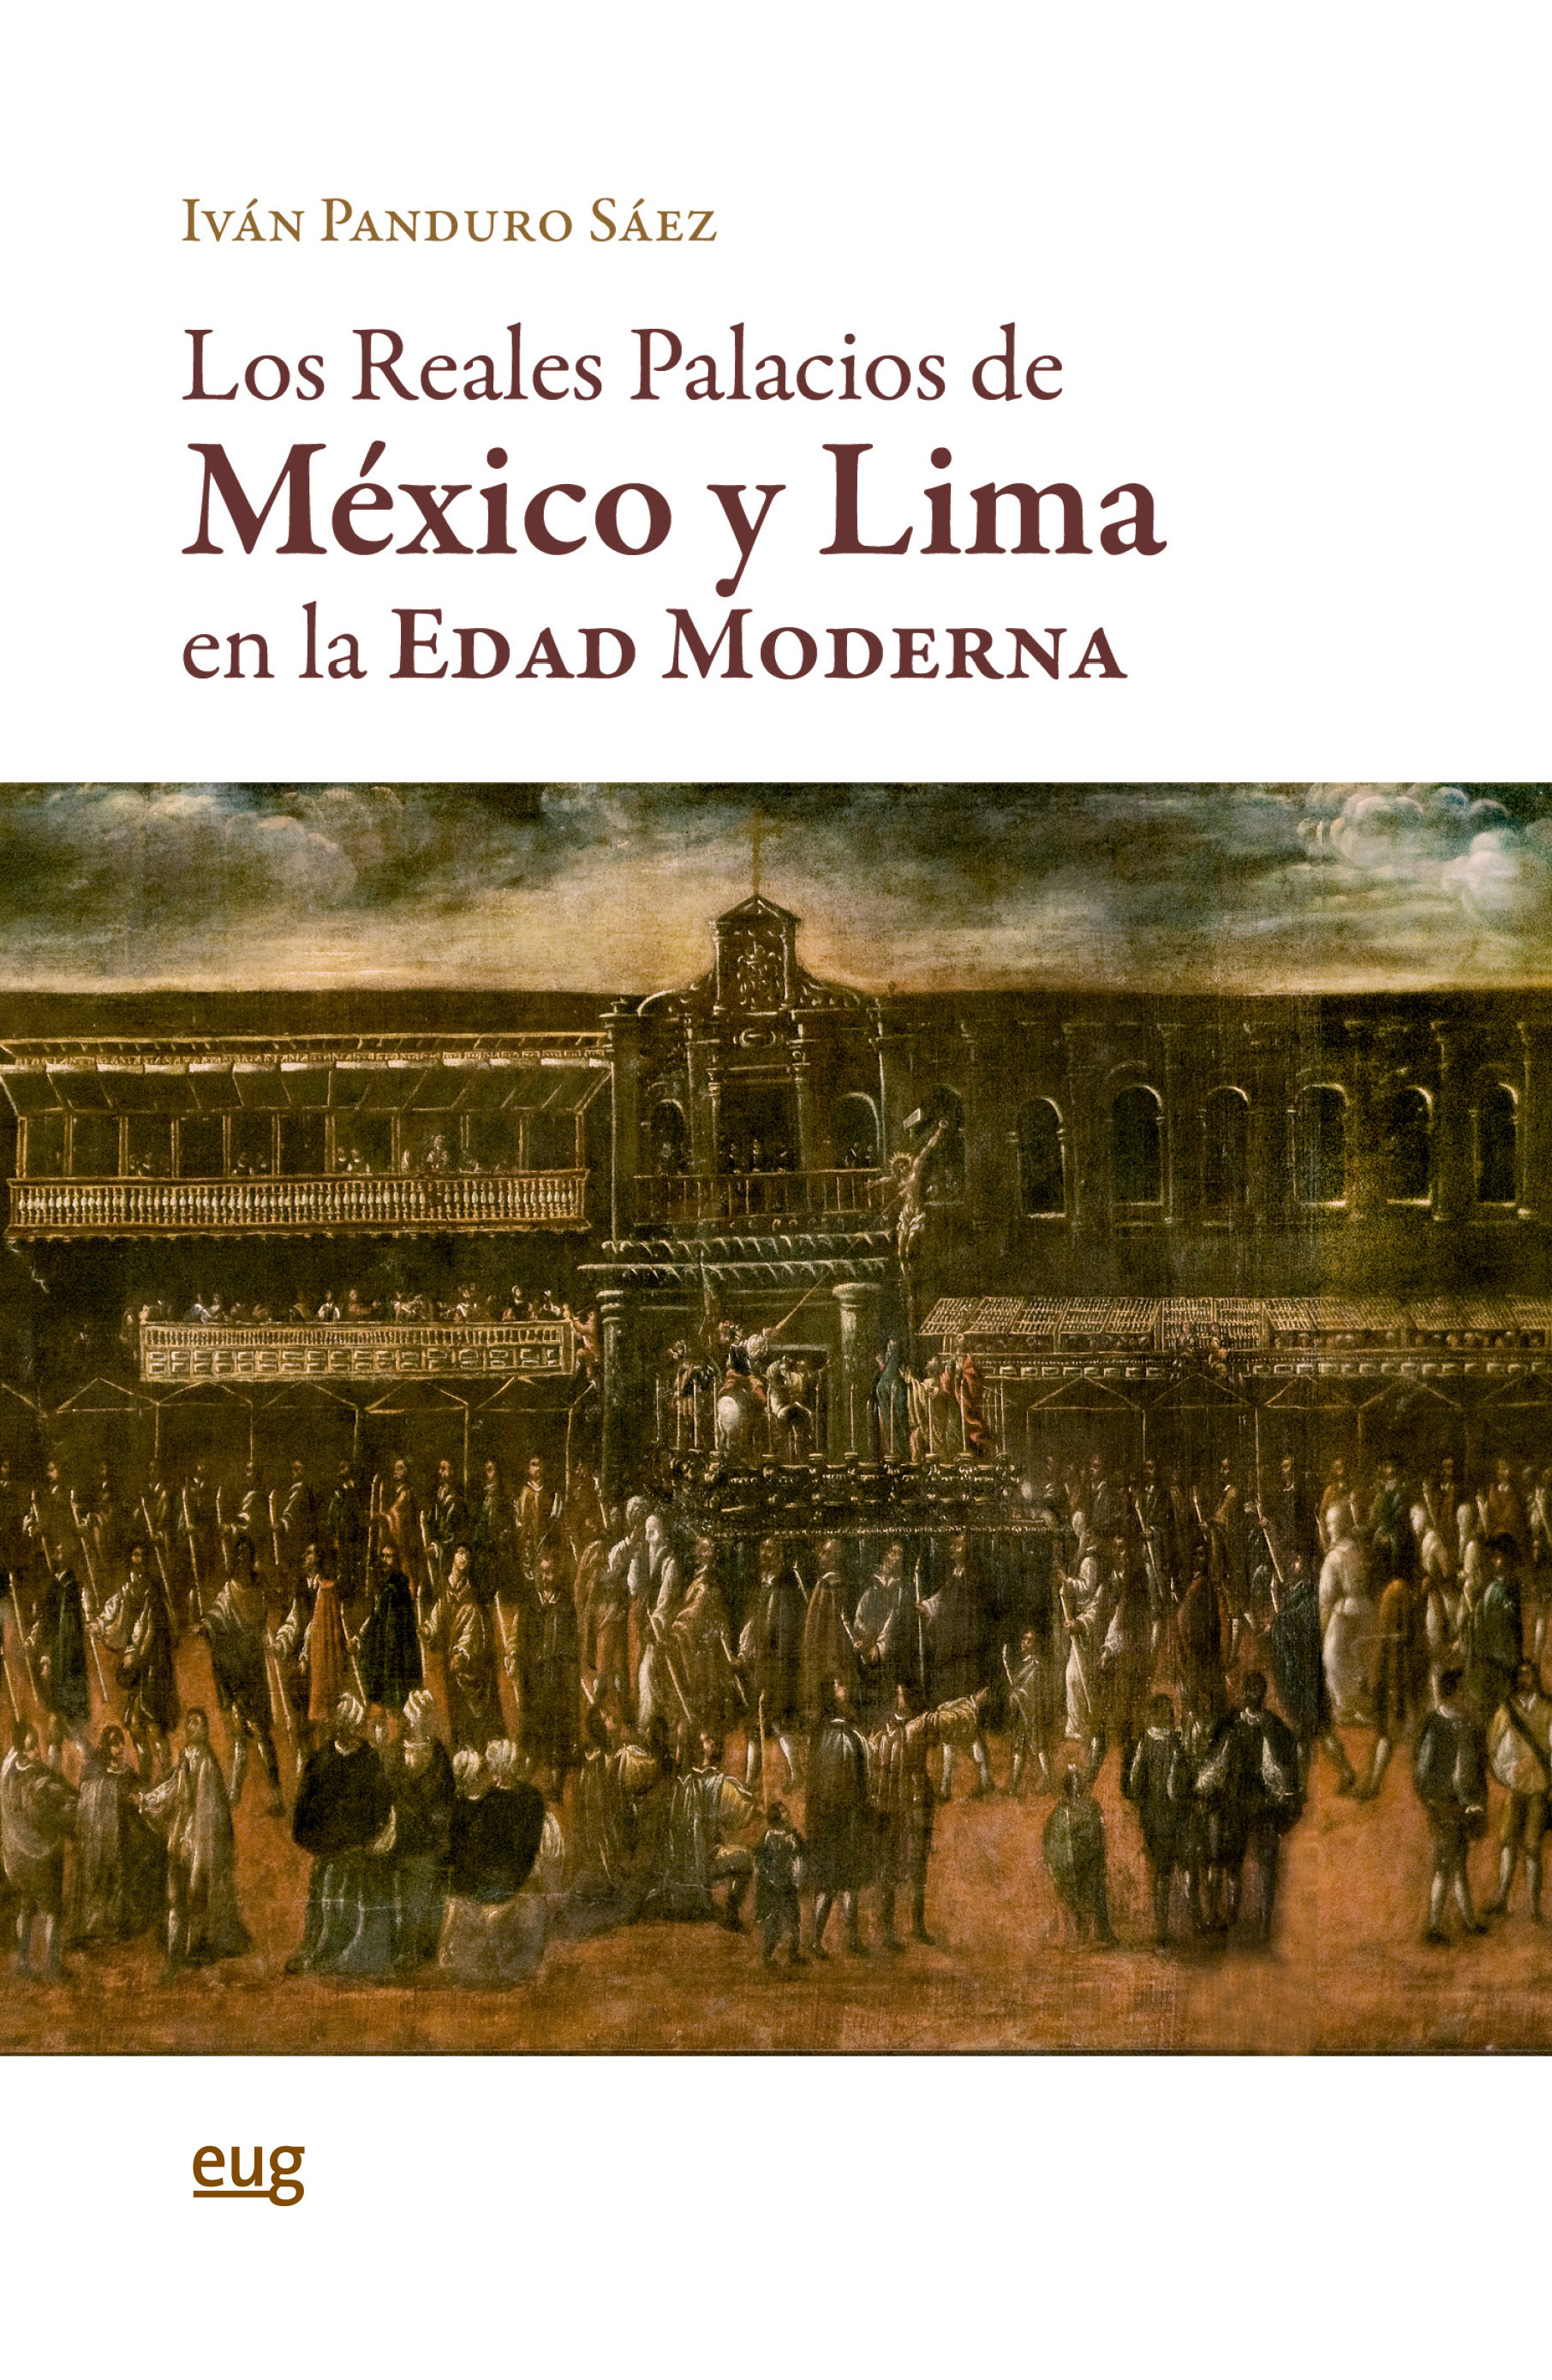 Imagen de portada del libro Los Reales Palacios de México y Lima en la Edad Moderna